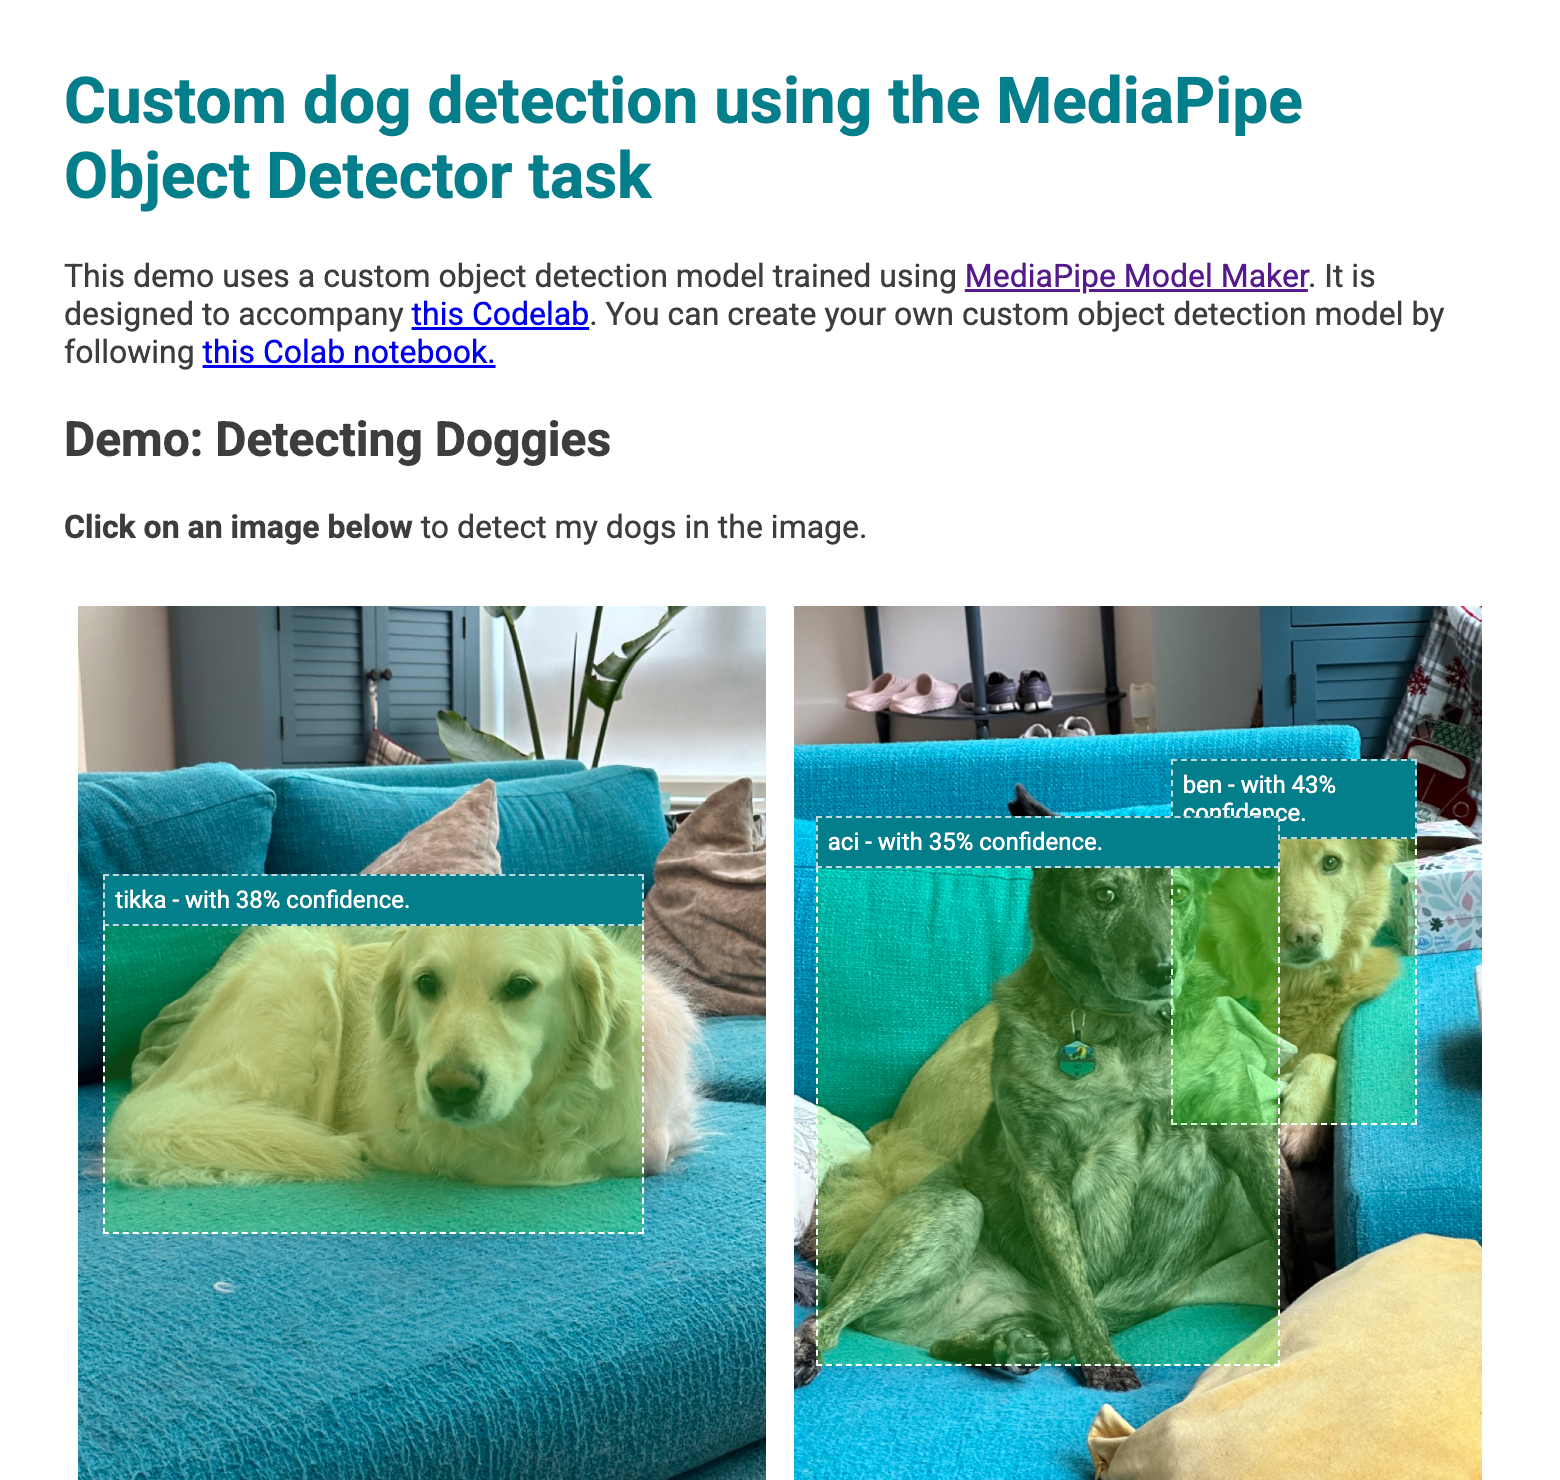 תצוגה מקדימה של אפליקציית האינטרנט עם תיבות תוחמות מעל הכלבים שזוהו בתמונות